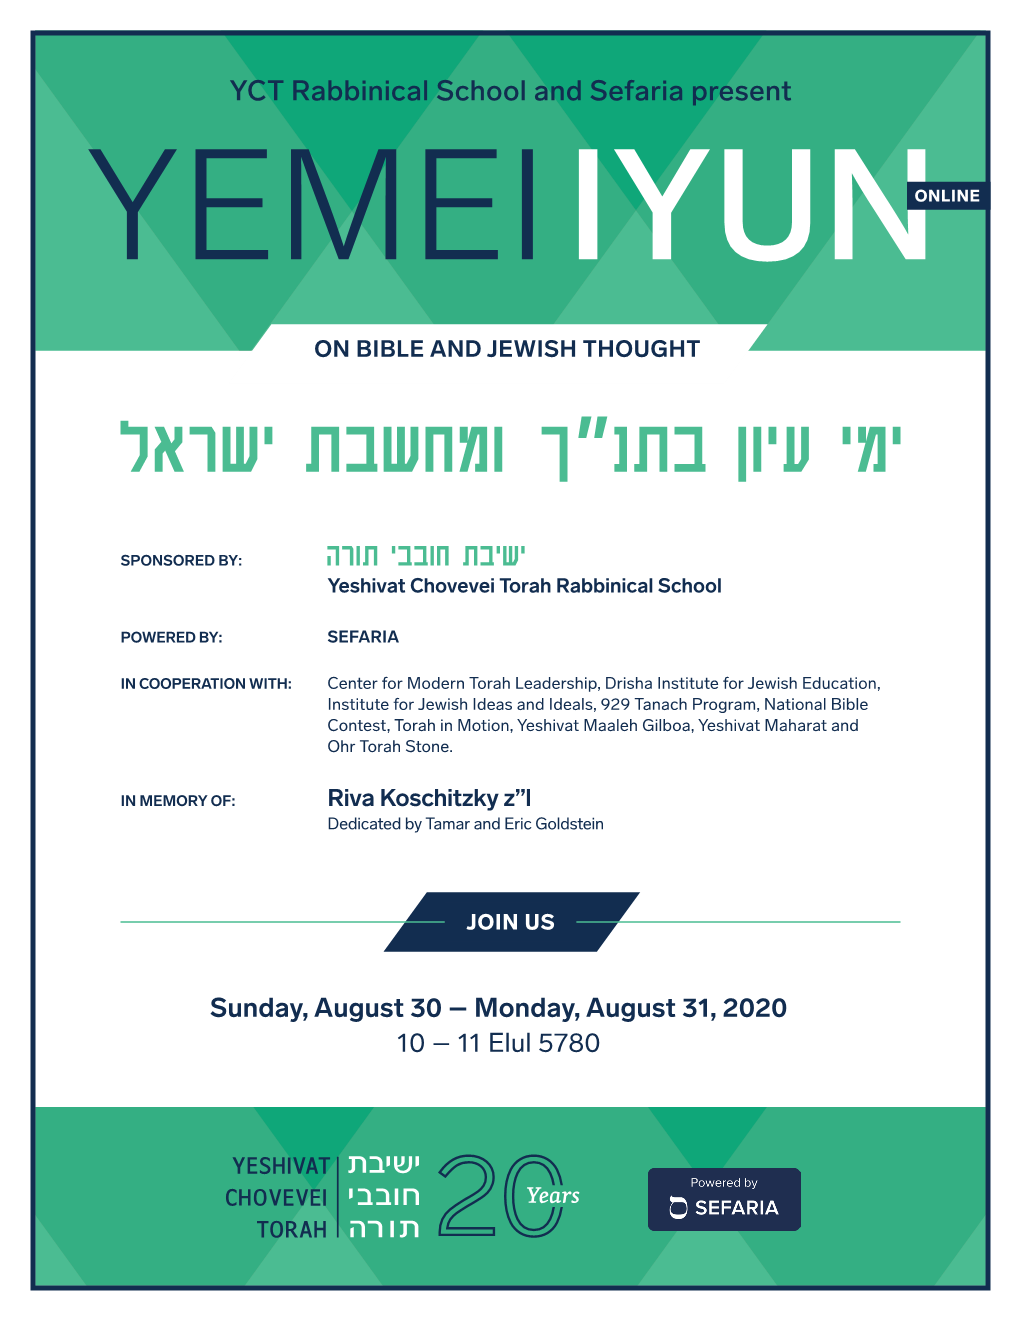 YCT Rabbinical School and Sefaria Present YEMEI IYUNONLINE